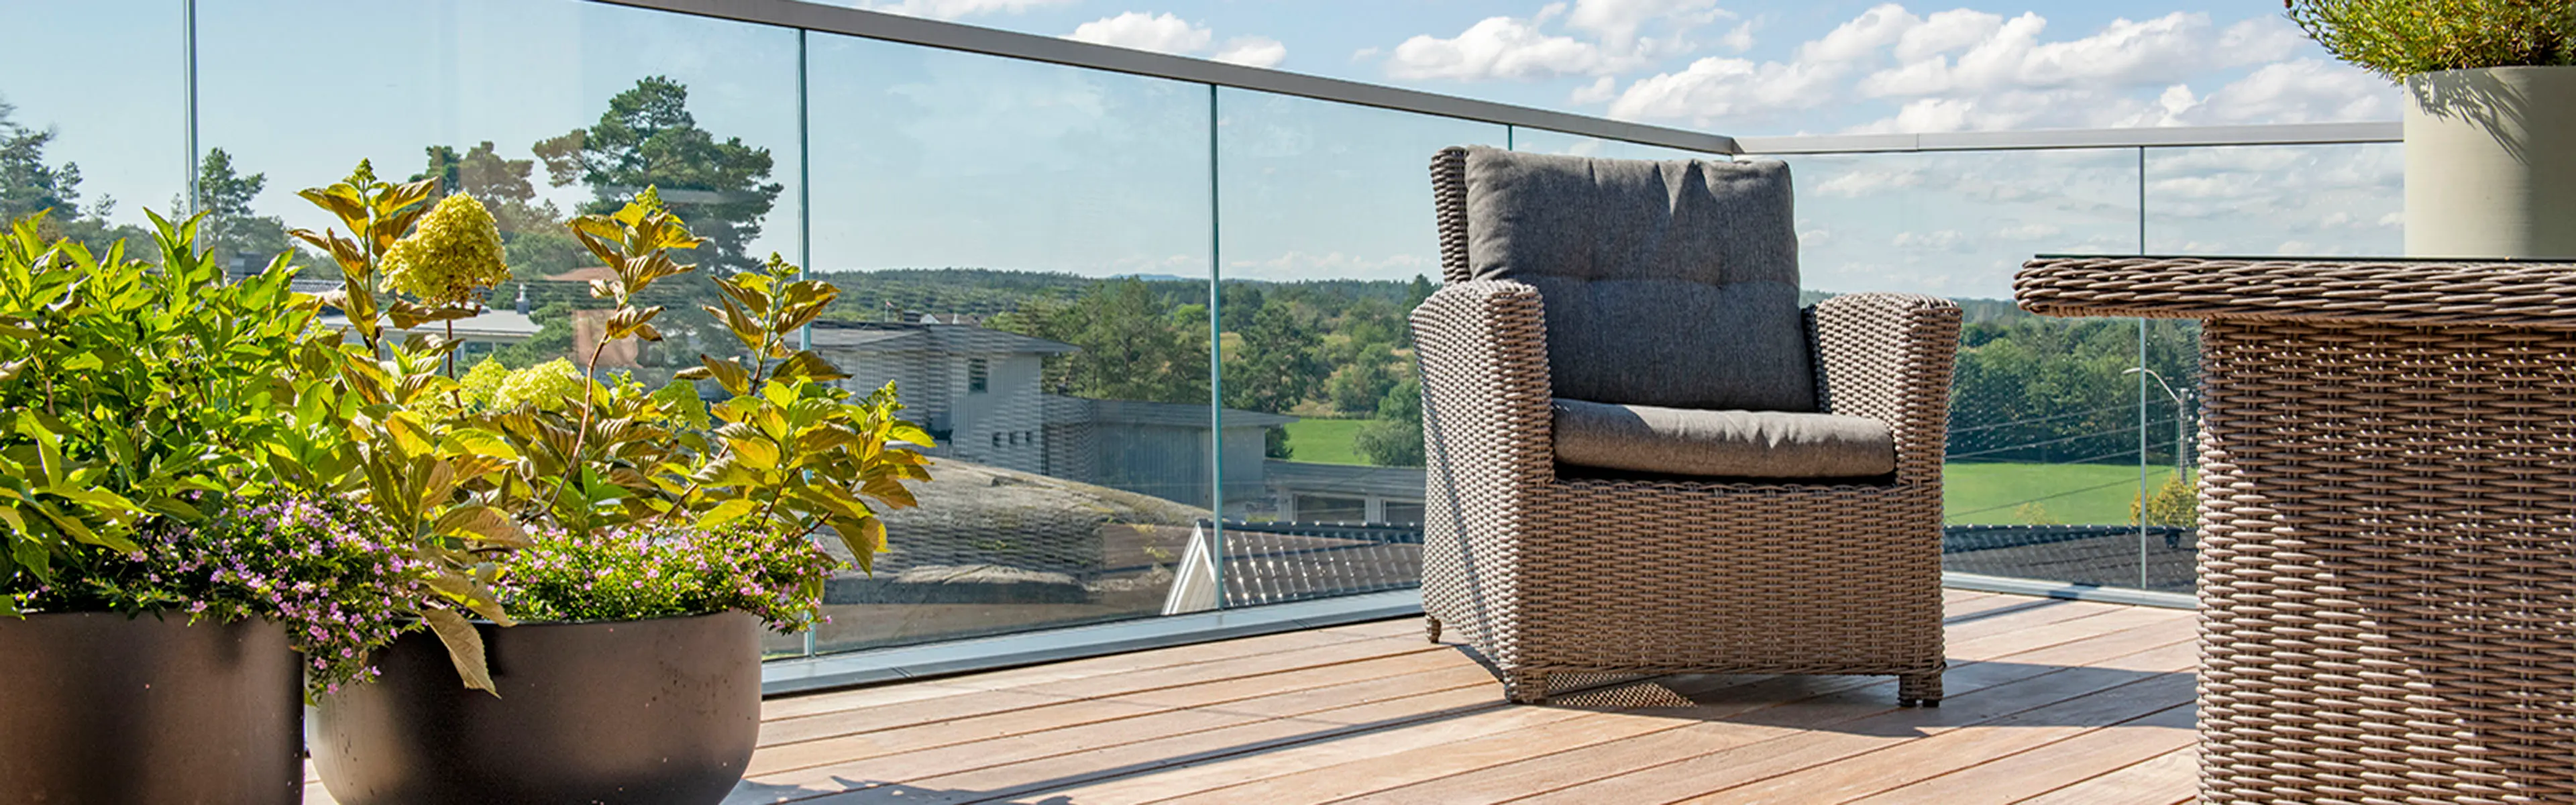 Glassrekkverk på terrasse med utsikt over fjord.